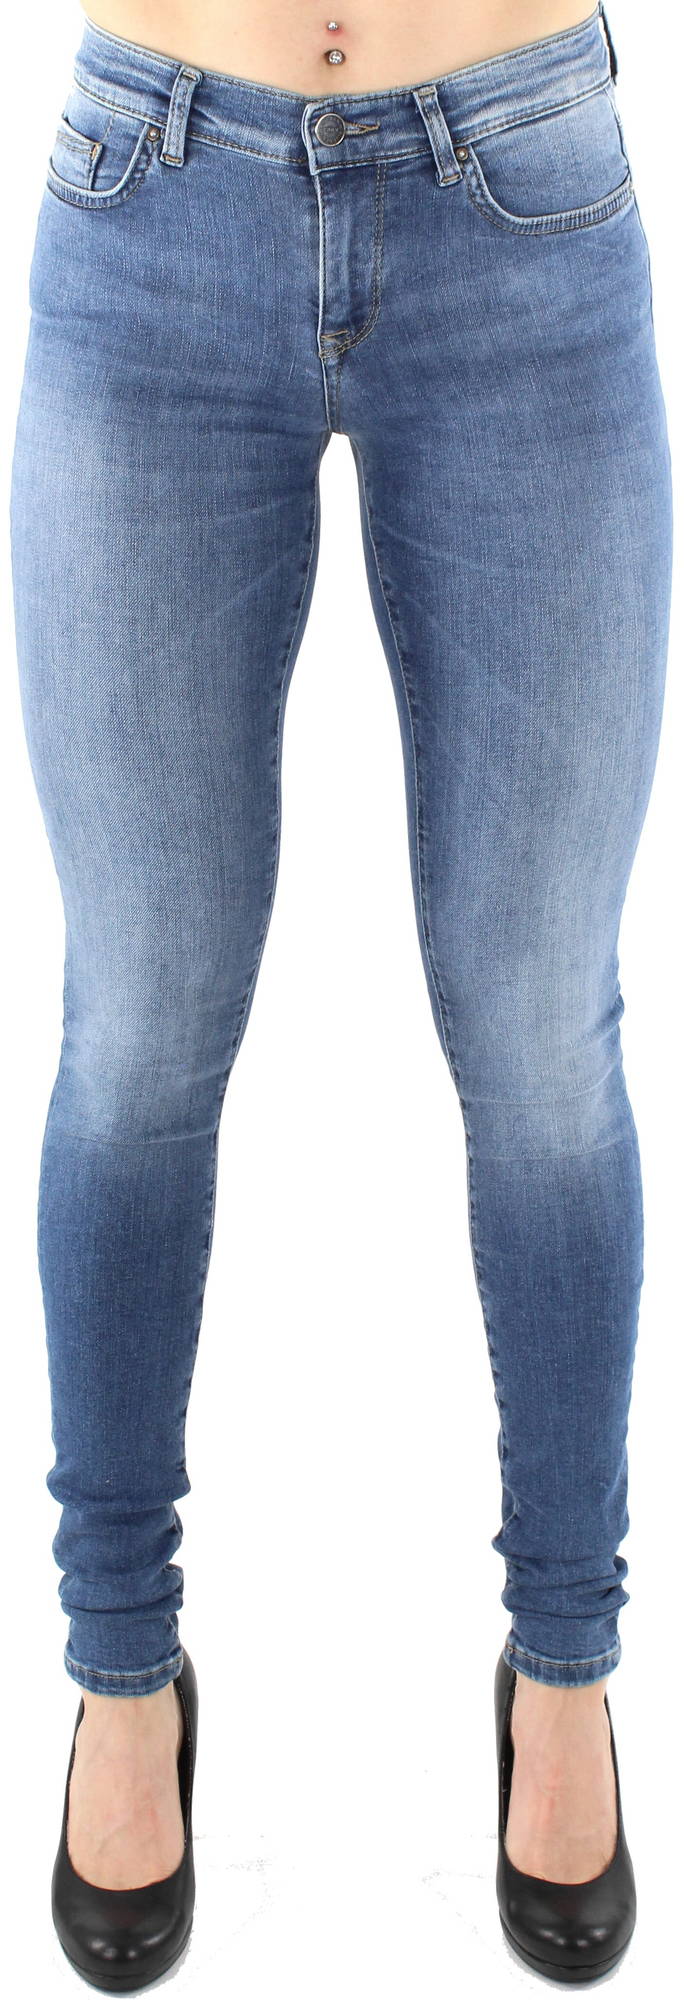 Only Jeans Shape reg - Stilettoshop.eu webstore